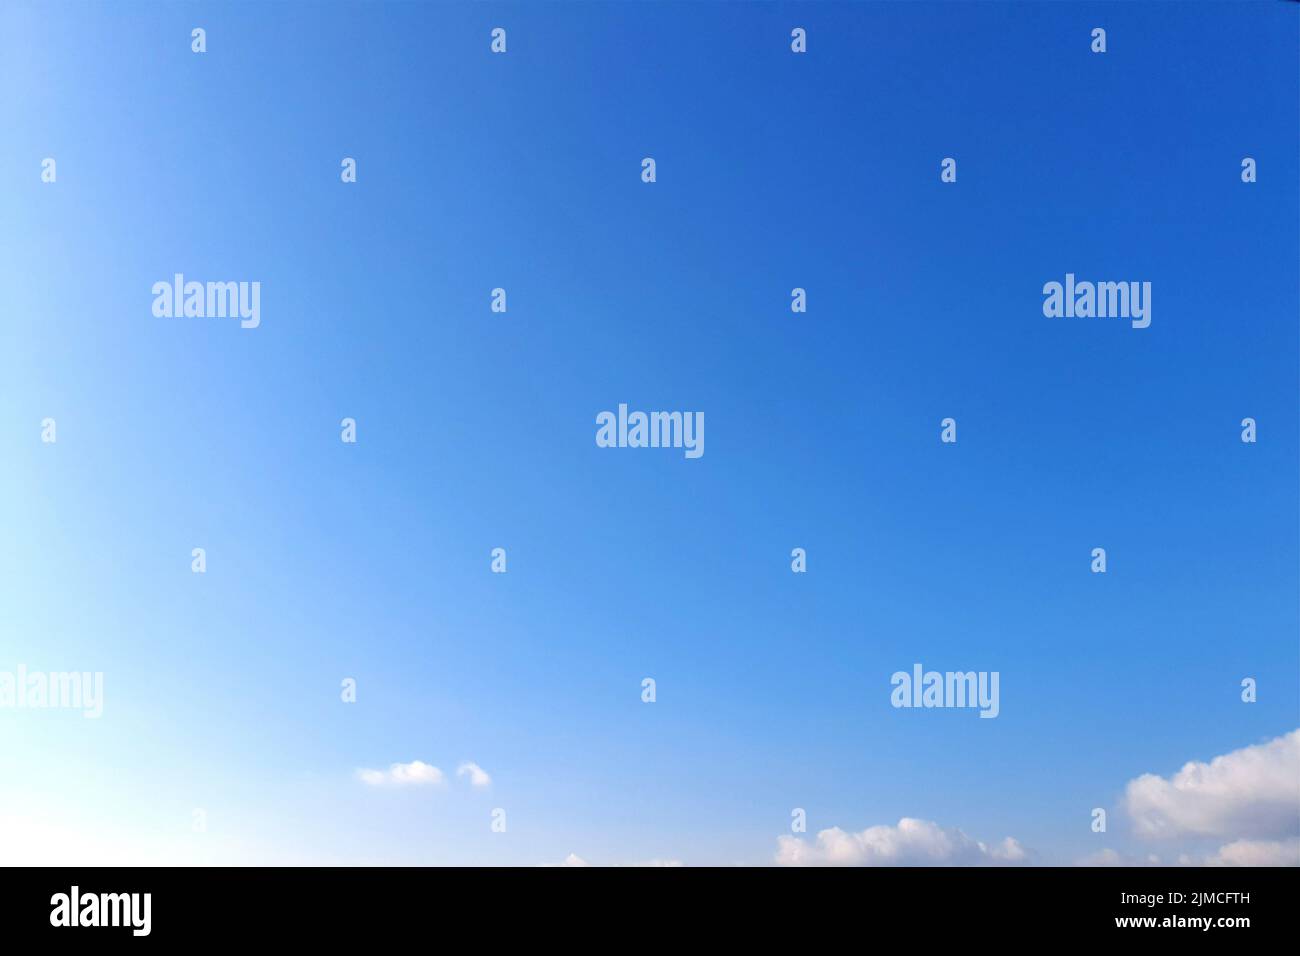 Wolken, blauer Himmel Hintergrund Design-Elemente. Pantone Classic Blau. Stockfoto